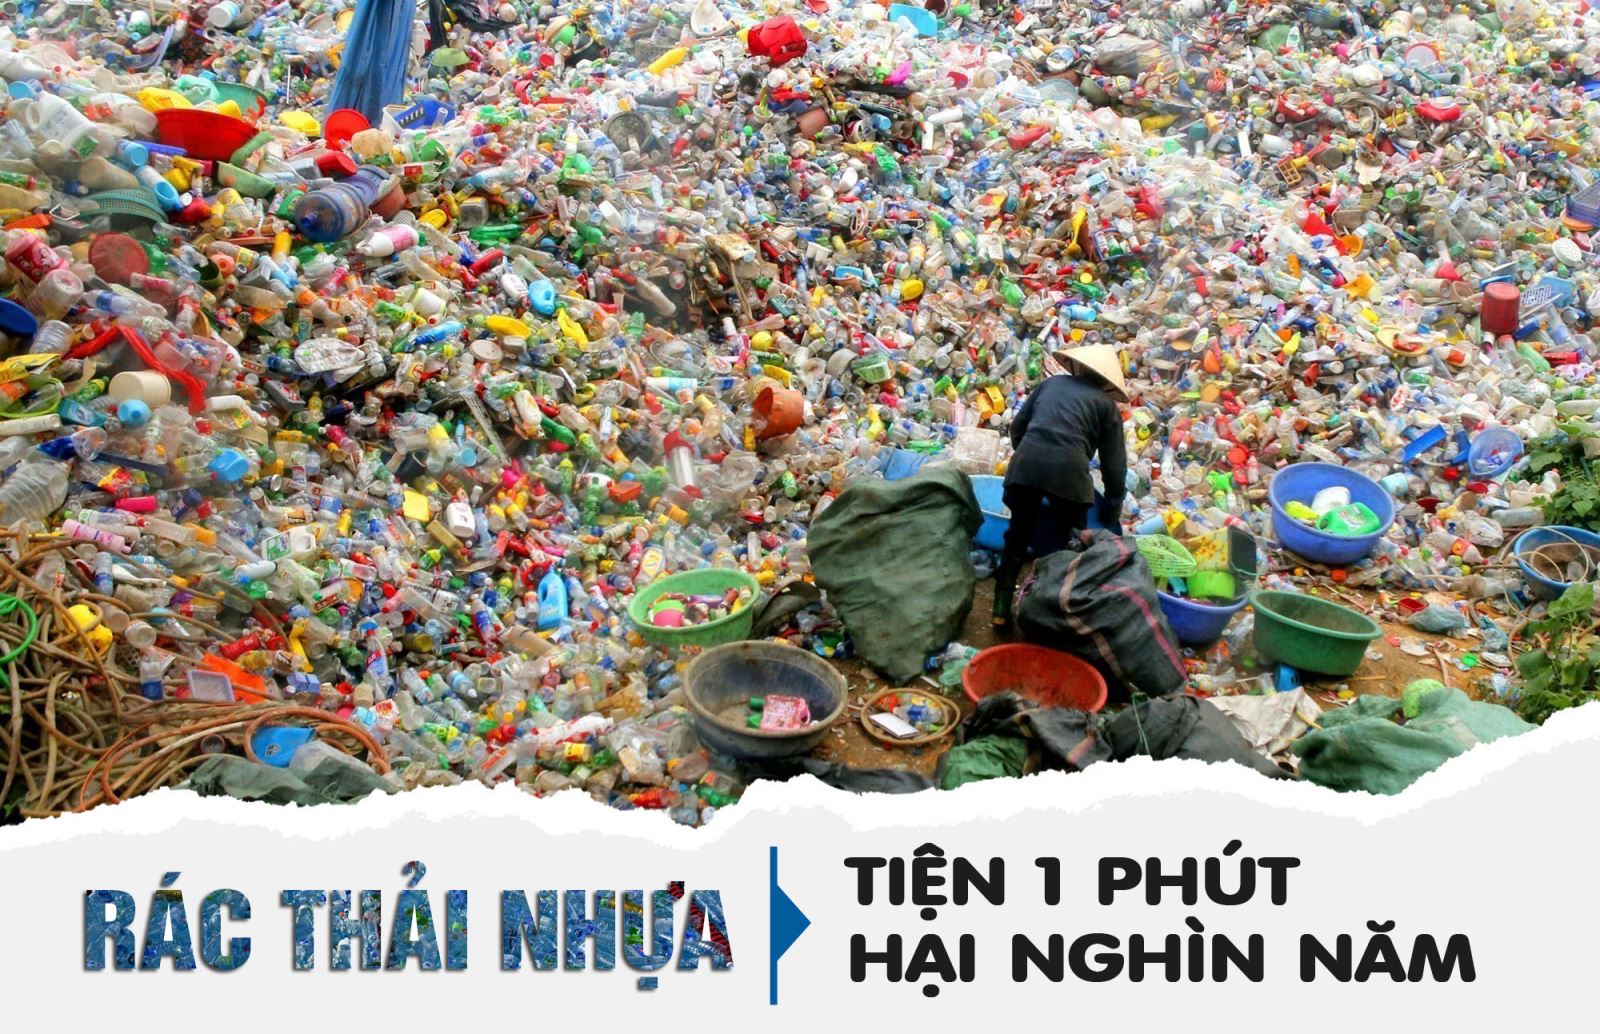 Rác thải nhựa: Tiện 1 phút, hại nghìn năm | baotintuc.vn